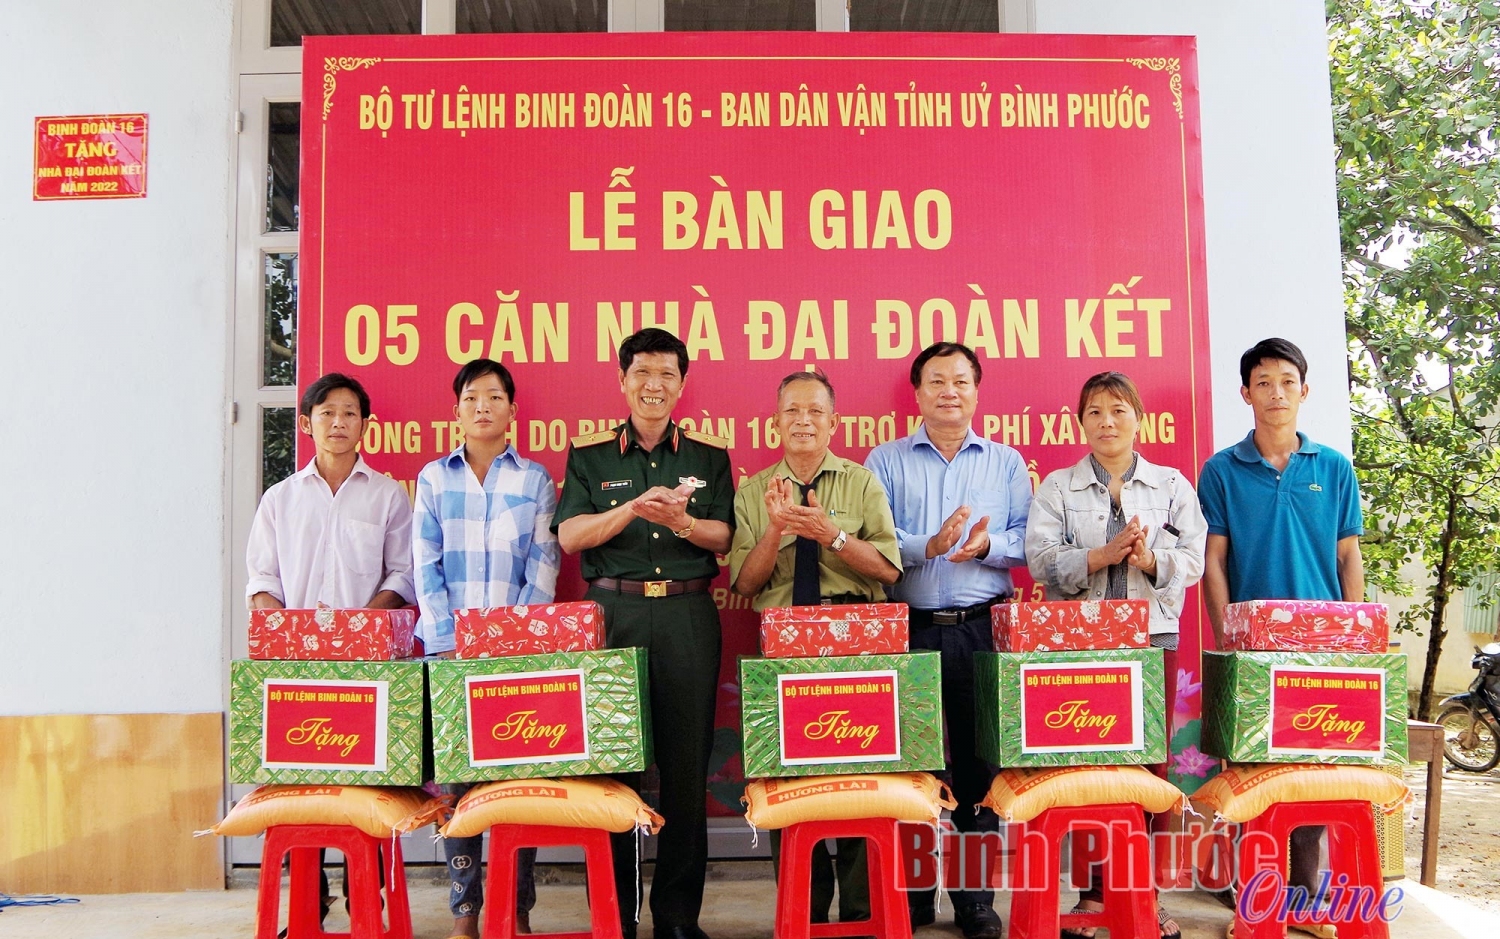 Ông Trịnh Thanh Tuệ, Phó trưởng Ban Dân vận Tỉnh ủy; Thiếu tướng Phạm Ngọc Tuấn, Tư lệnh Binh đoàn 16 tặng quà cho các gia đình được nhận nhà Đại đoàn kết